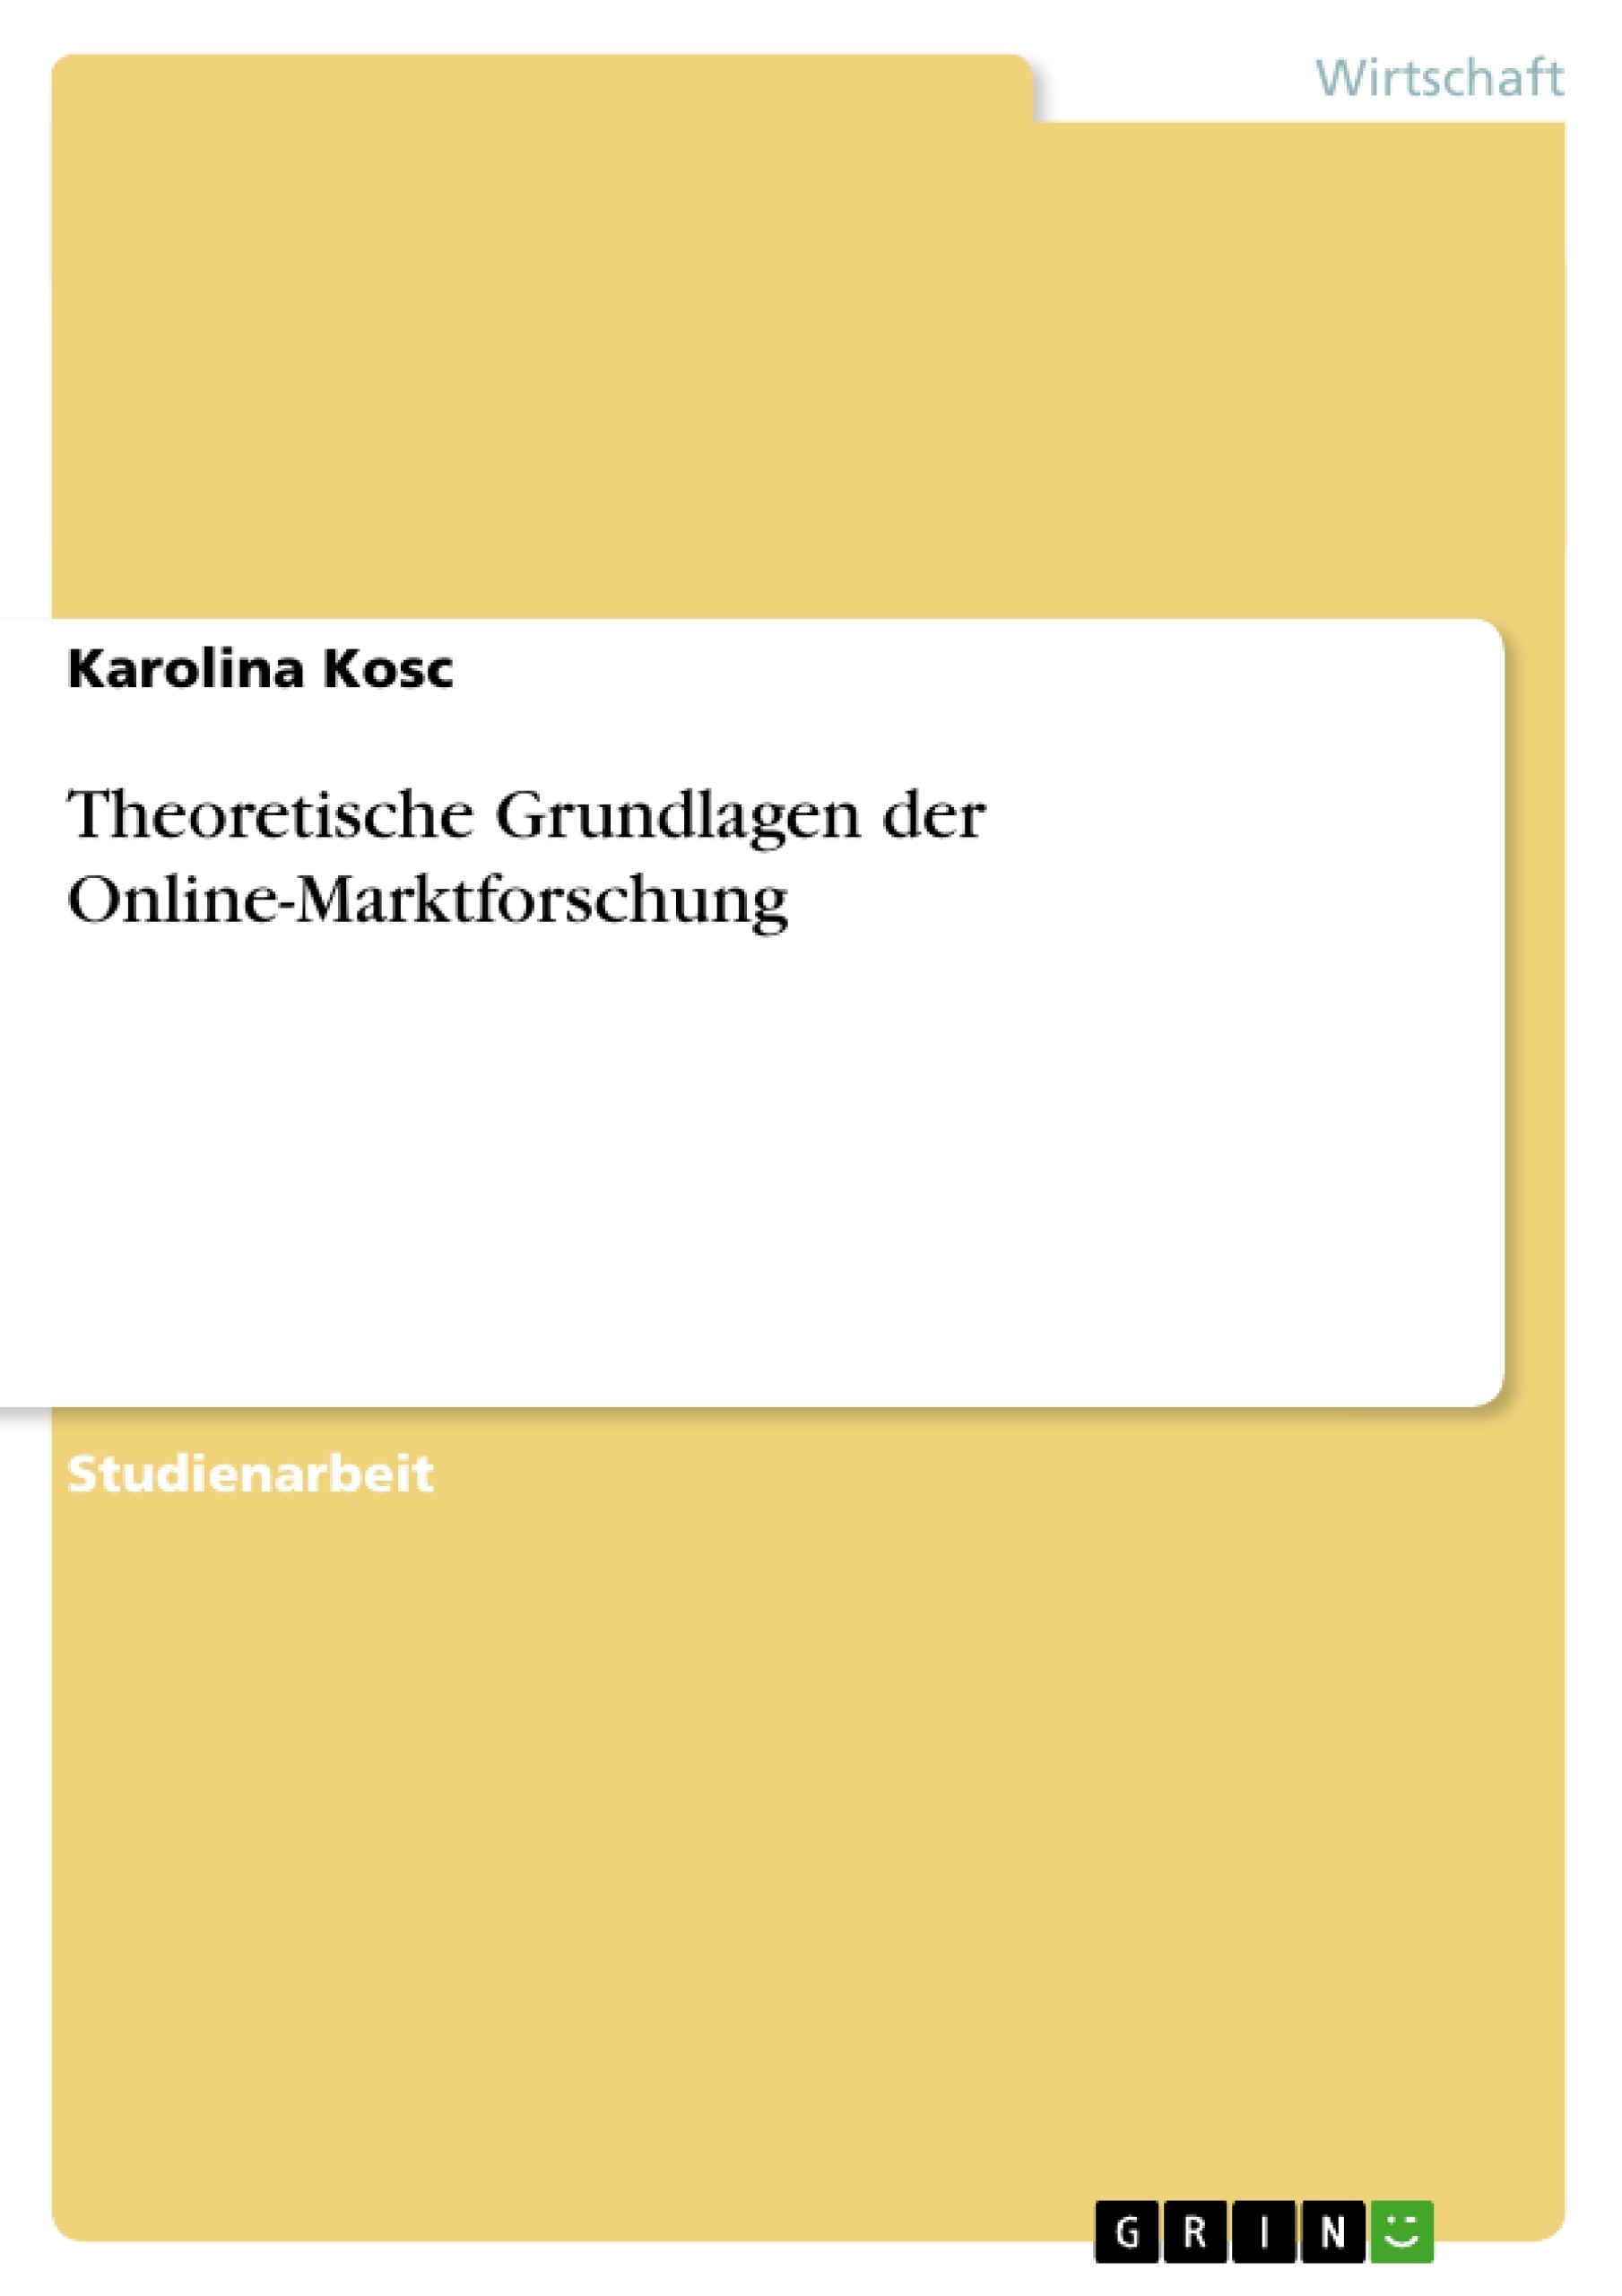 Title: Theoretische Grundlagen der Online-Marktforschung